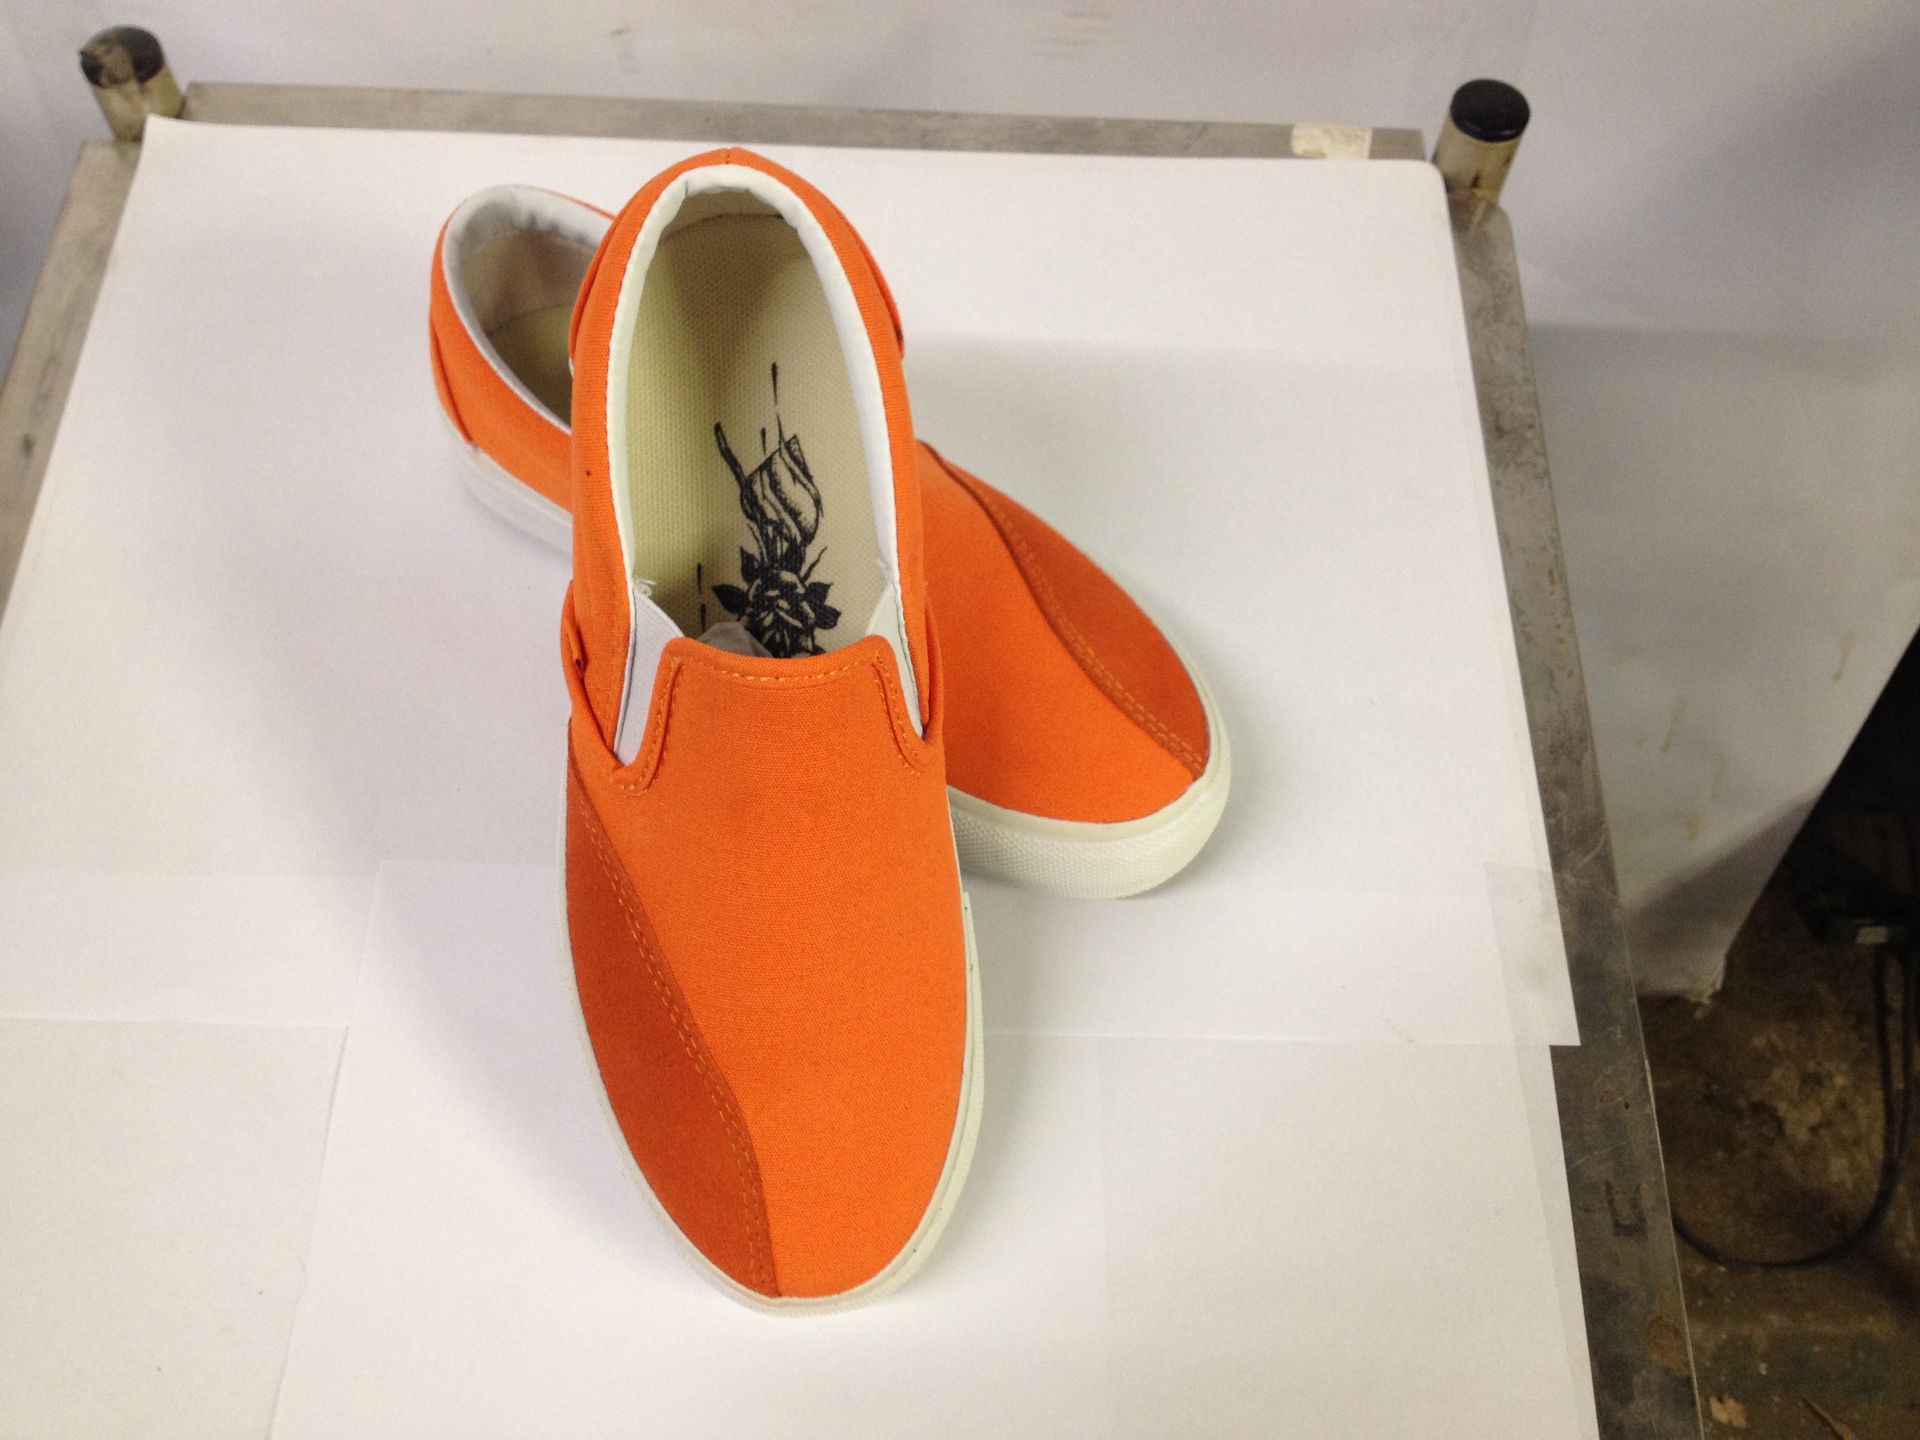 1 x Dodds Skate Shoe | Colour: Rich Orange | UK Size: 4 | Unisex | RRP £ 55 - Image 2 of 2